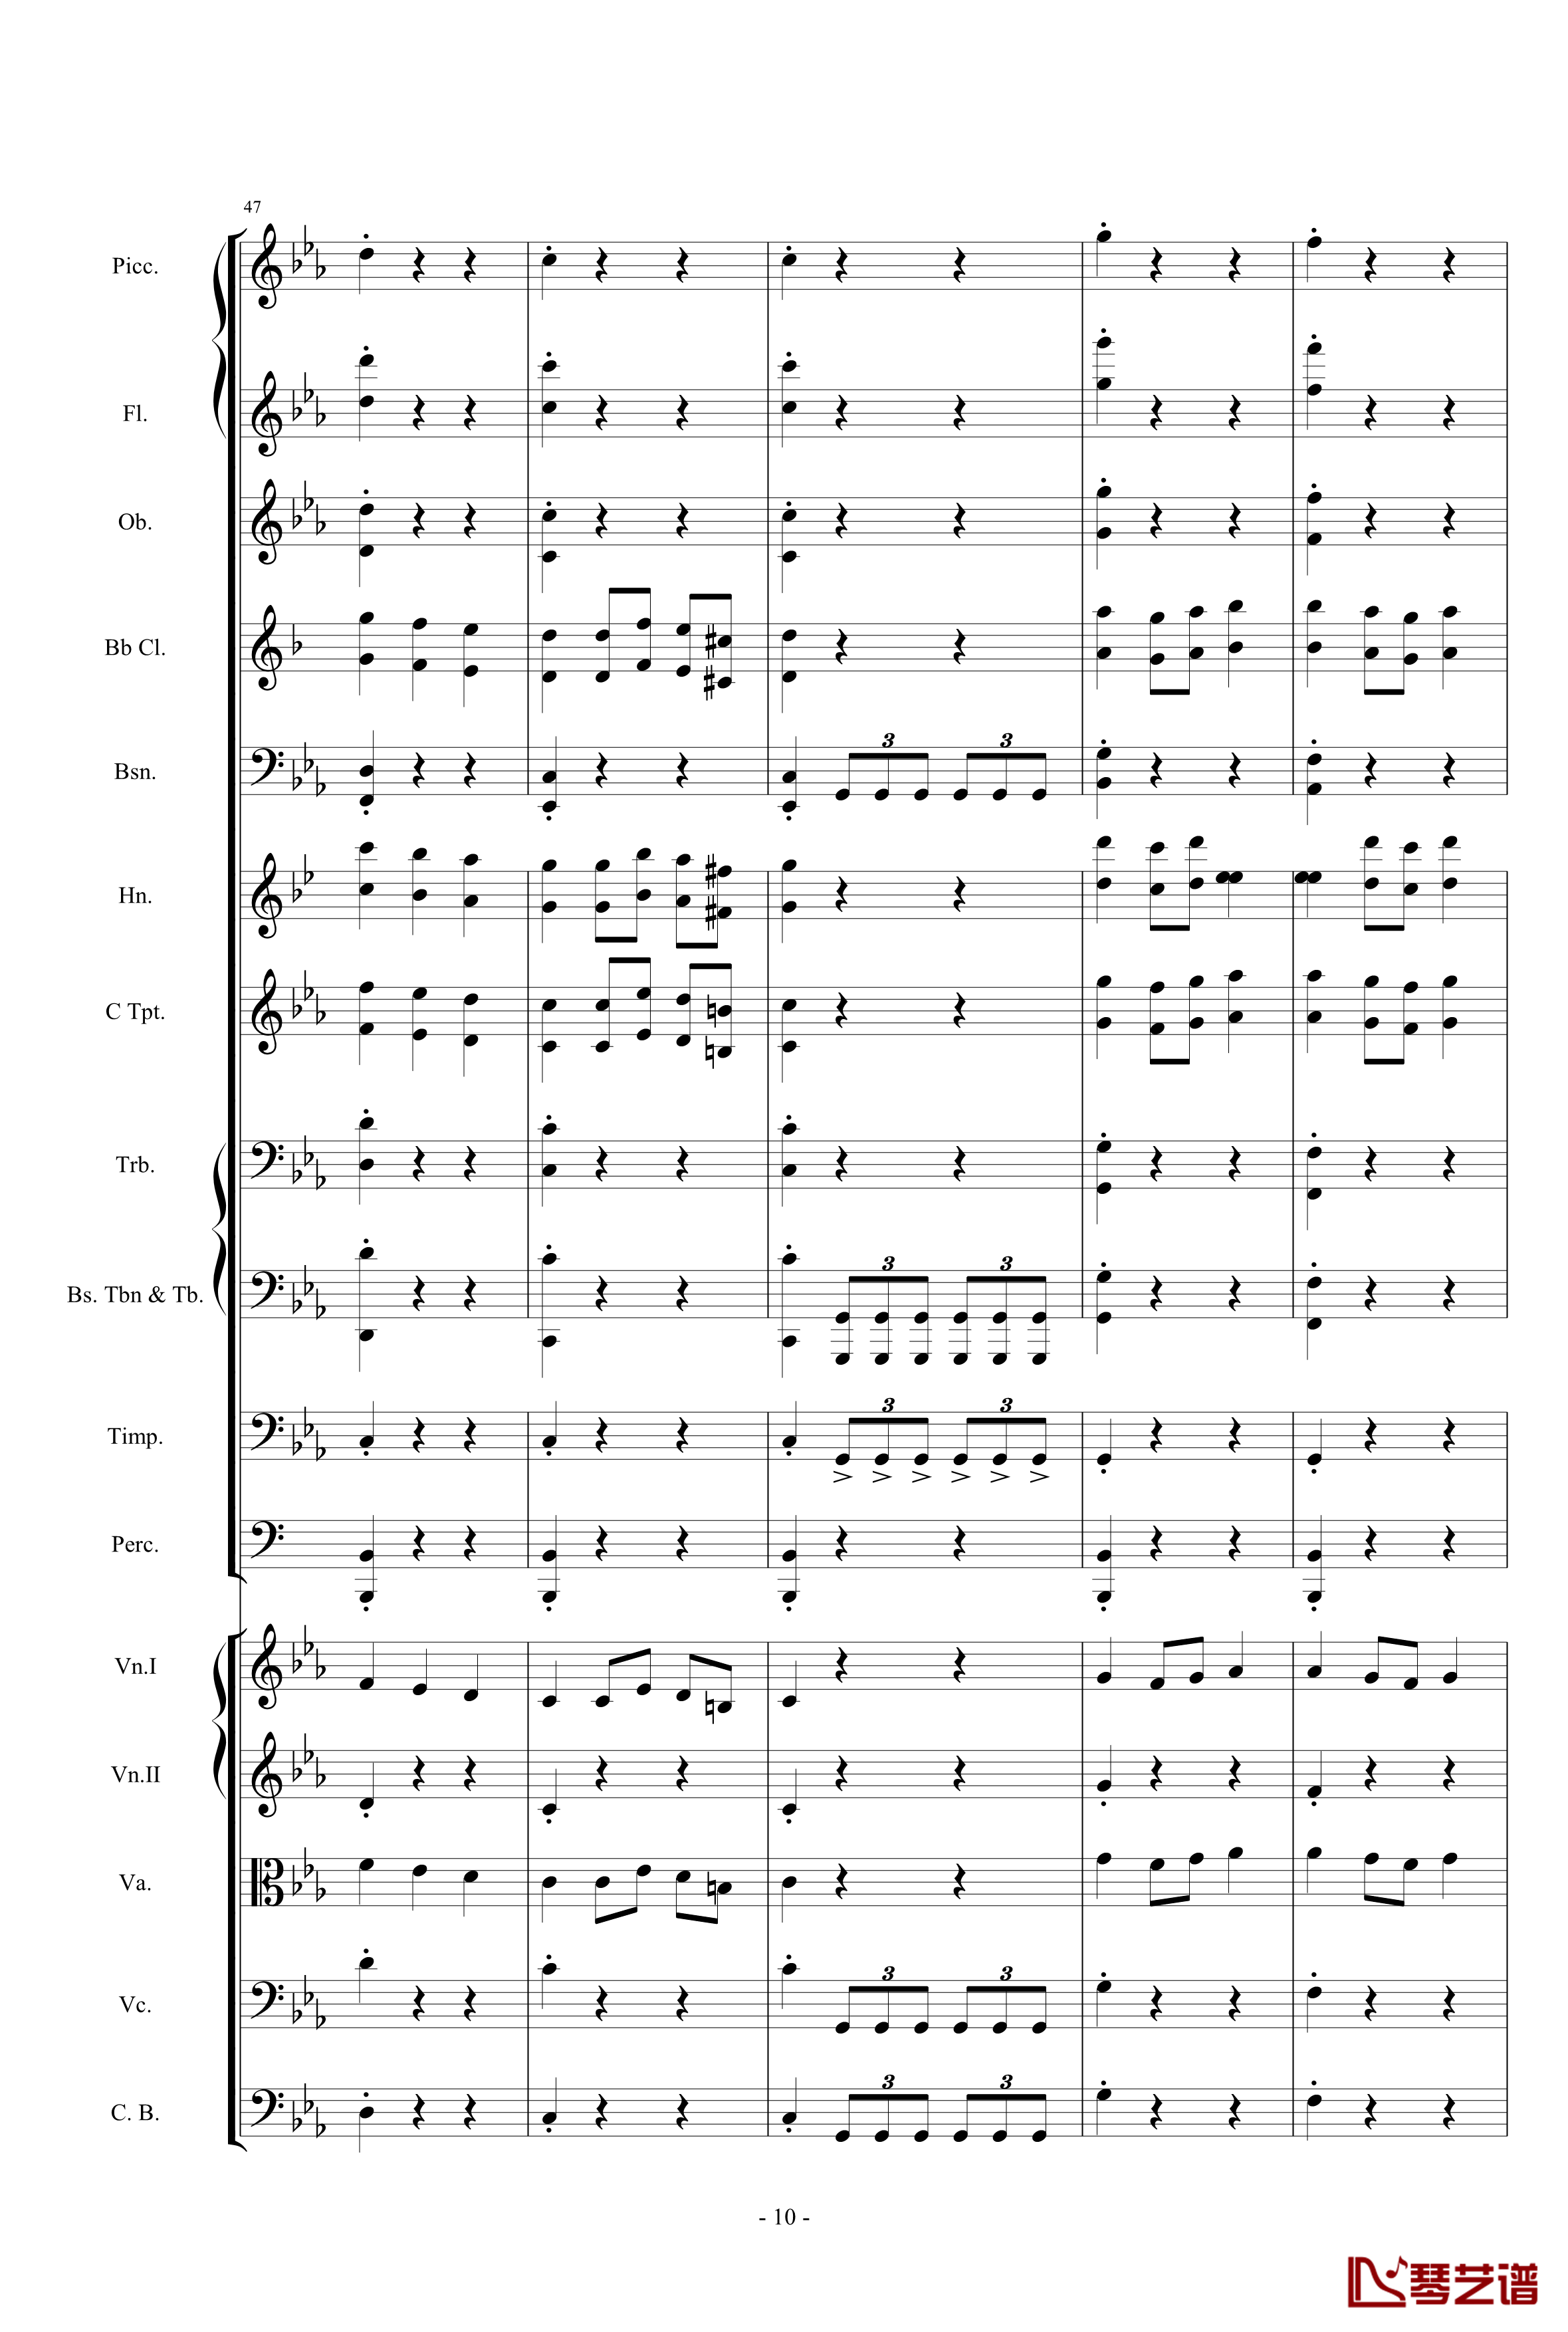 愤怒的小鸟交响曲第三乐章Op.5 no.3钢琴谱-1057257810